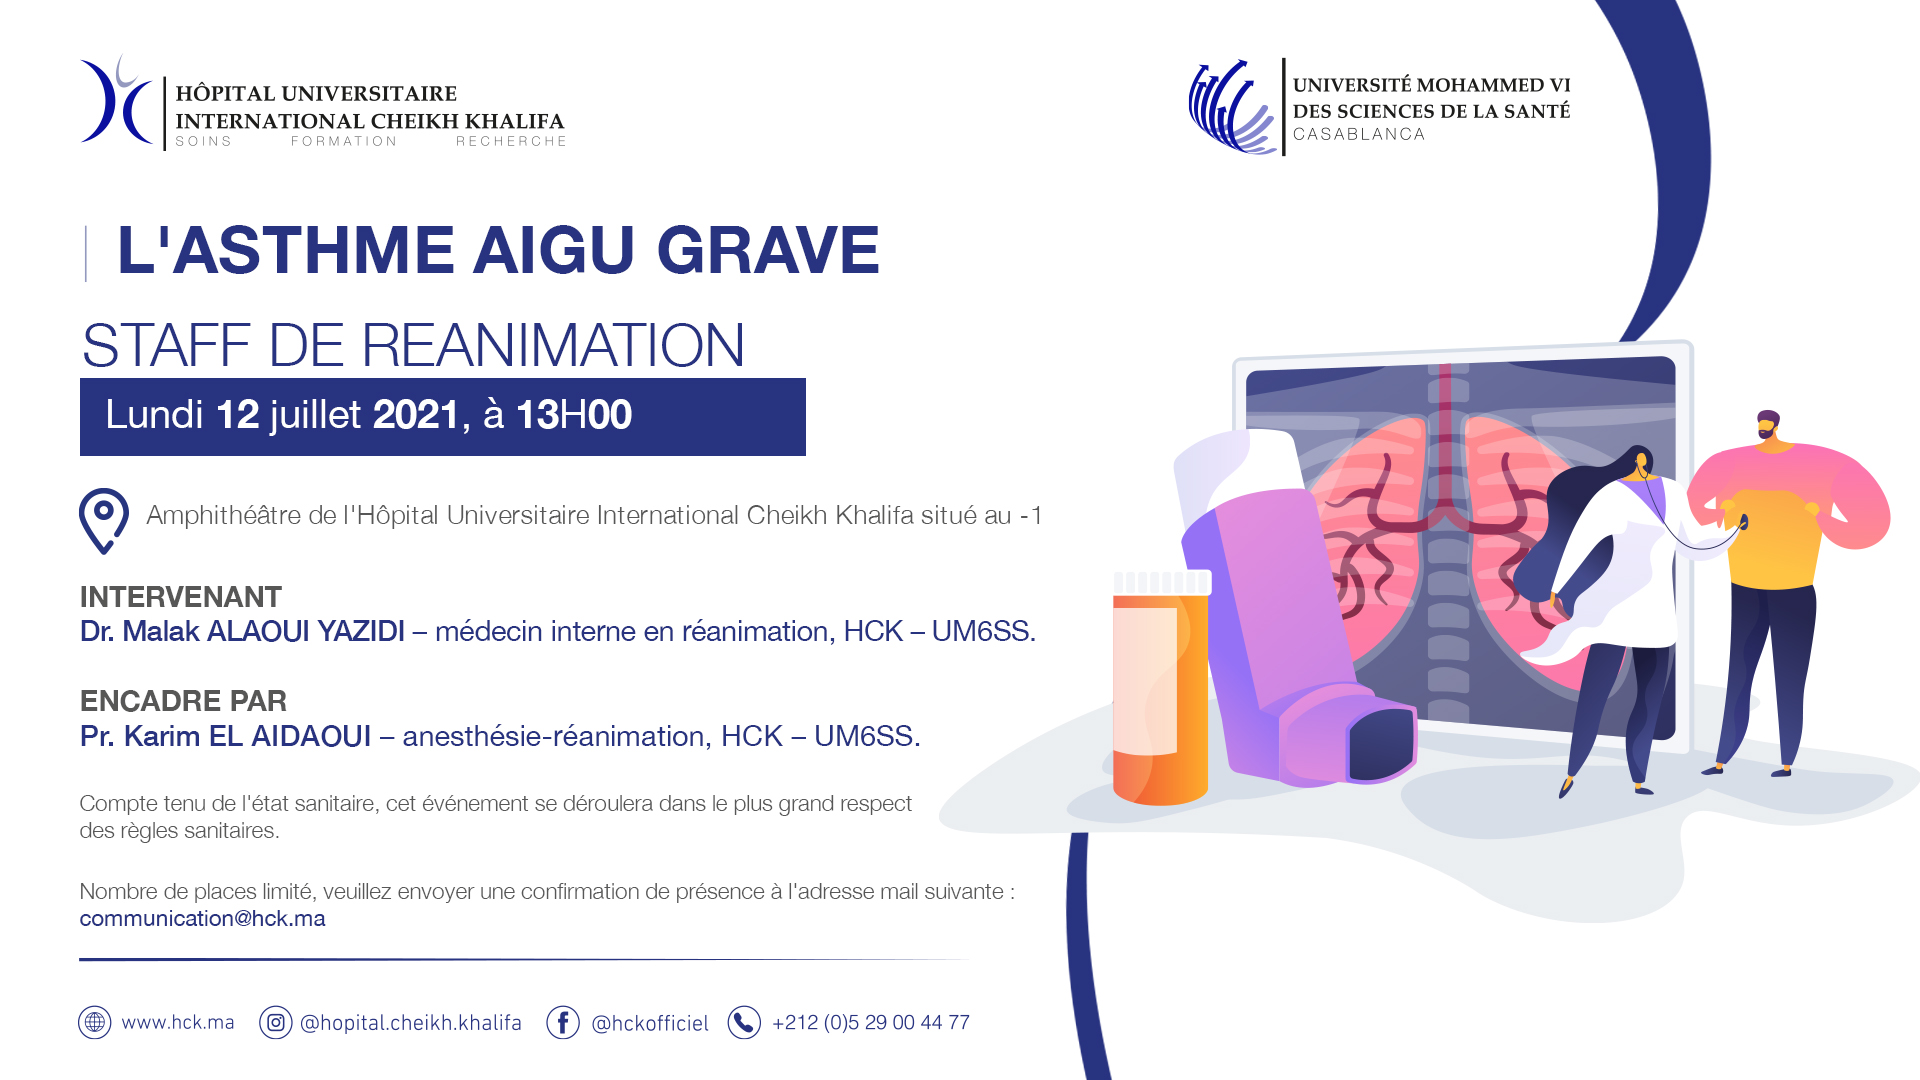 STAFF DE REANIMATION - L'ASTHME AIGU GRAVE